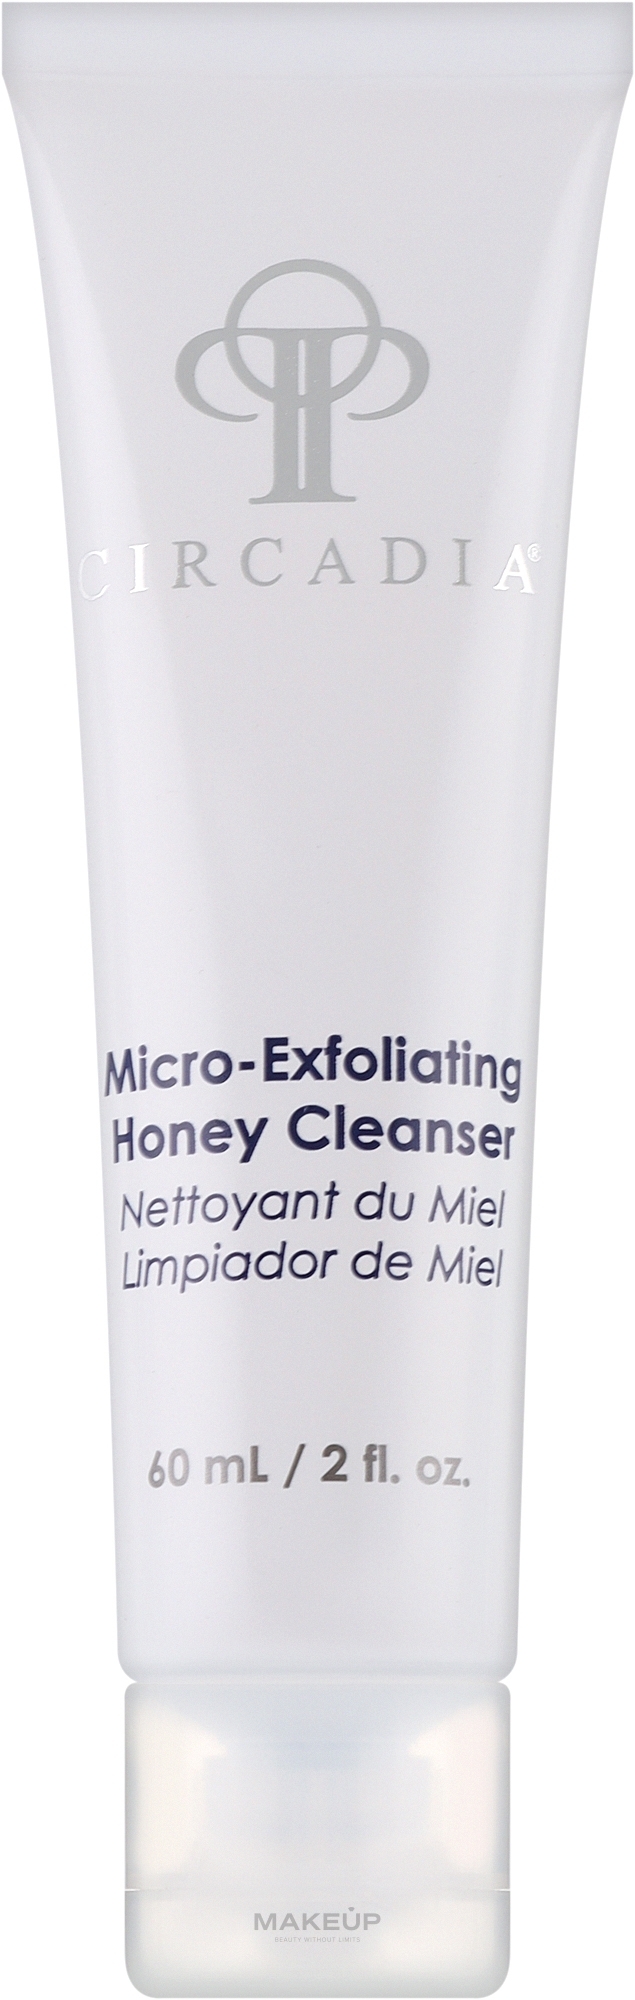 Медовый гель-микроэксфолиант для очищения кожи лица - Circadia Micro-Exfoliating Honey Cleanser — фото 60ml